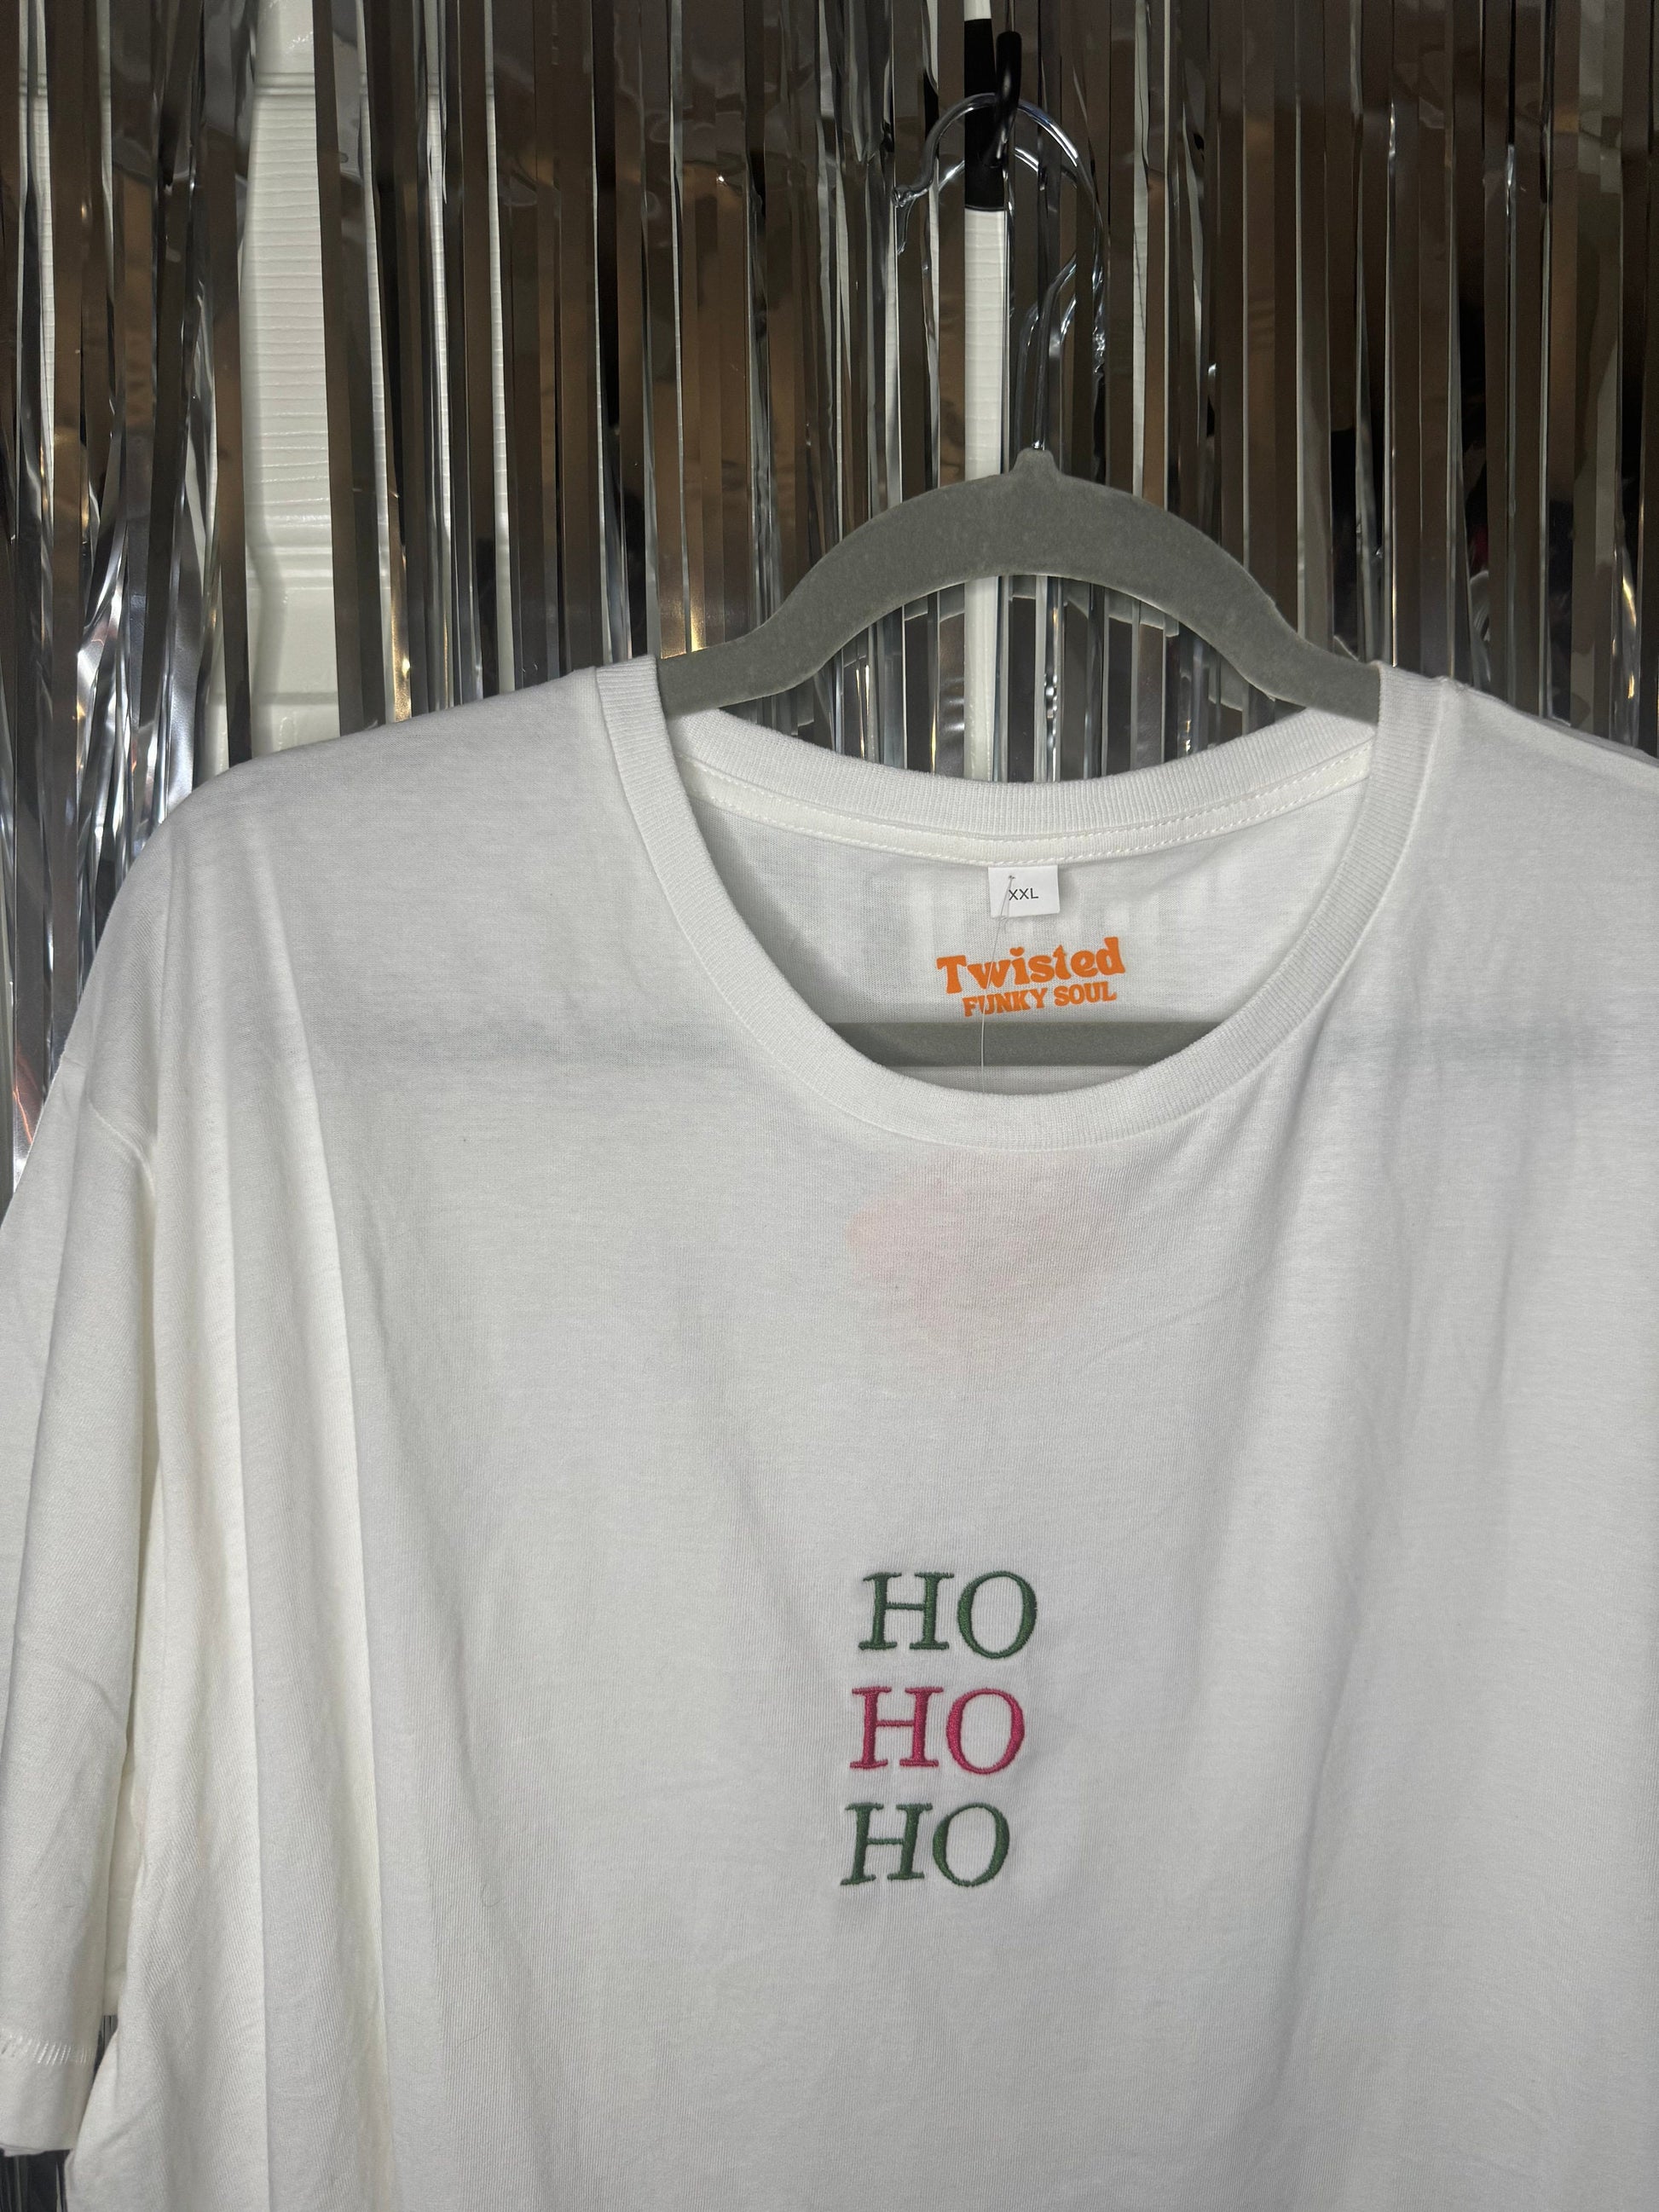 HO HO HO Festive Sweater | Christmas Jumper| Santa Claus | Mrs Claus |